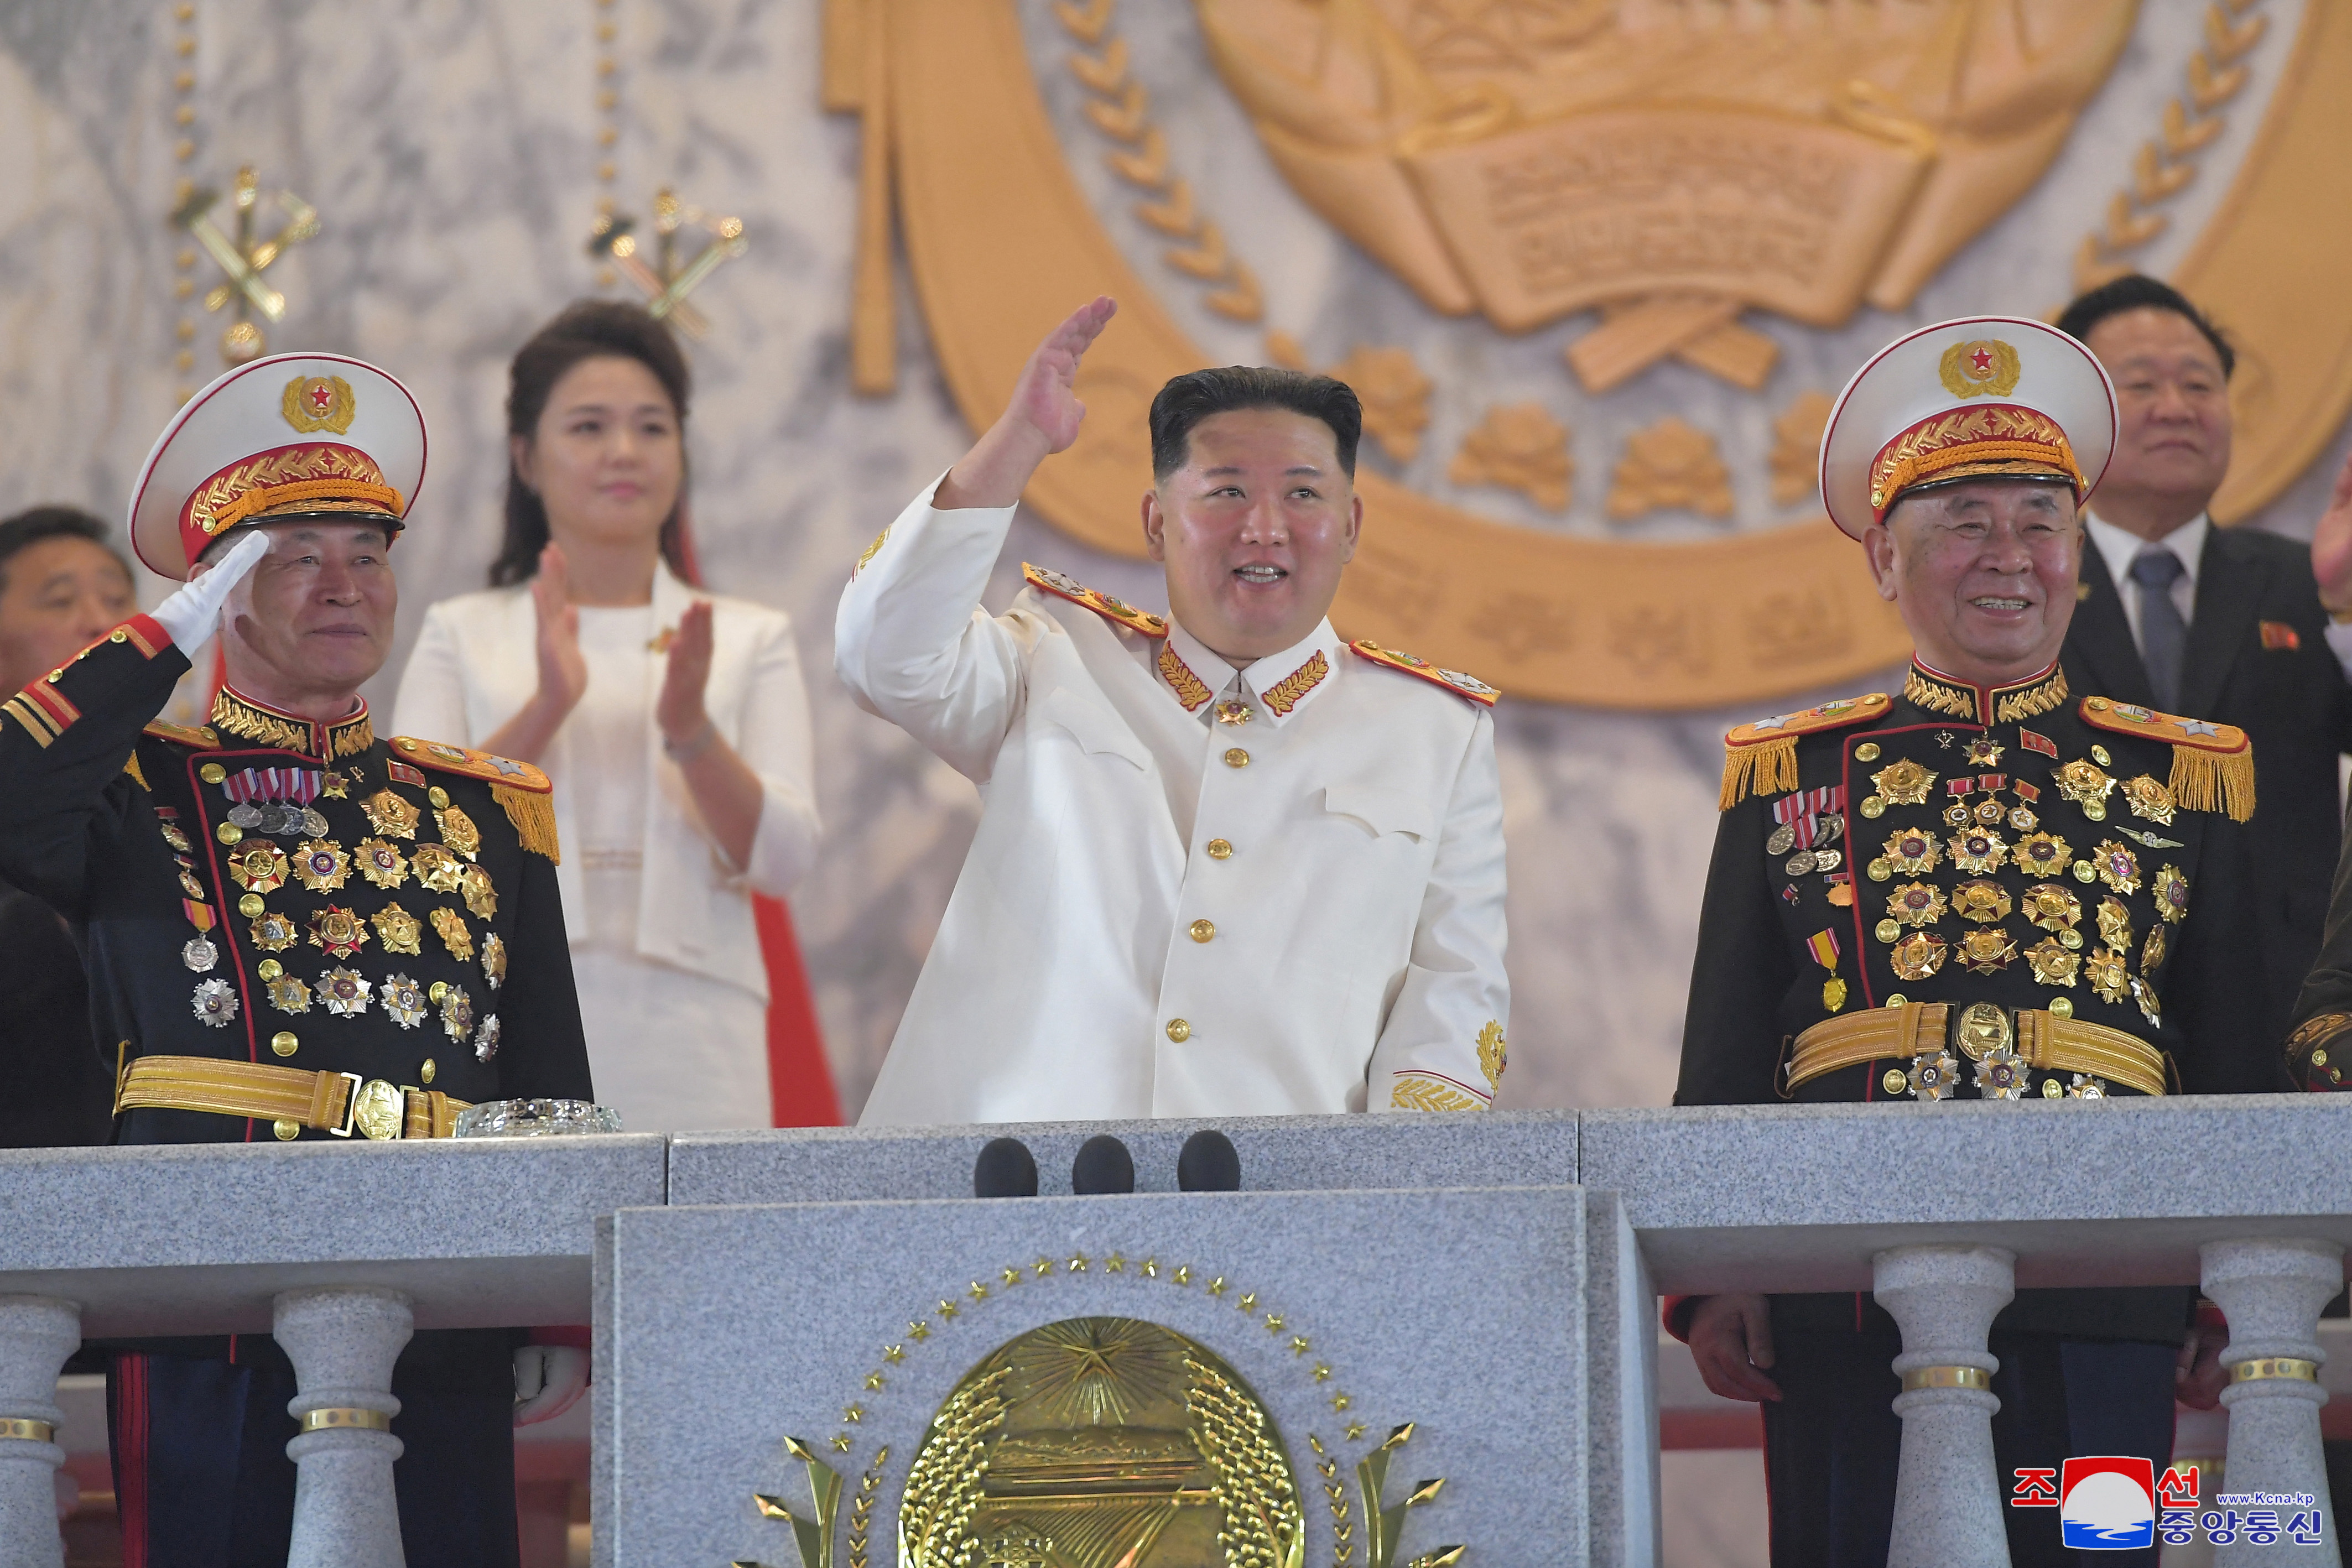 Kim Jong-un aseguró durante un desfile militar que ampliará su poder nuclear “a la mayor velocidad”